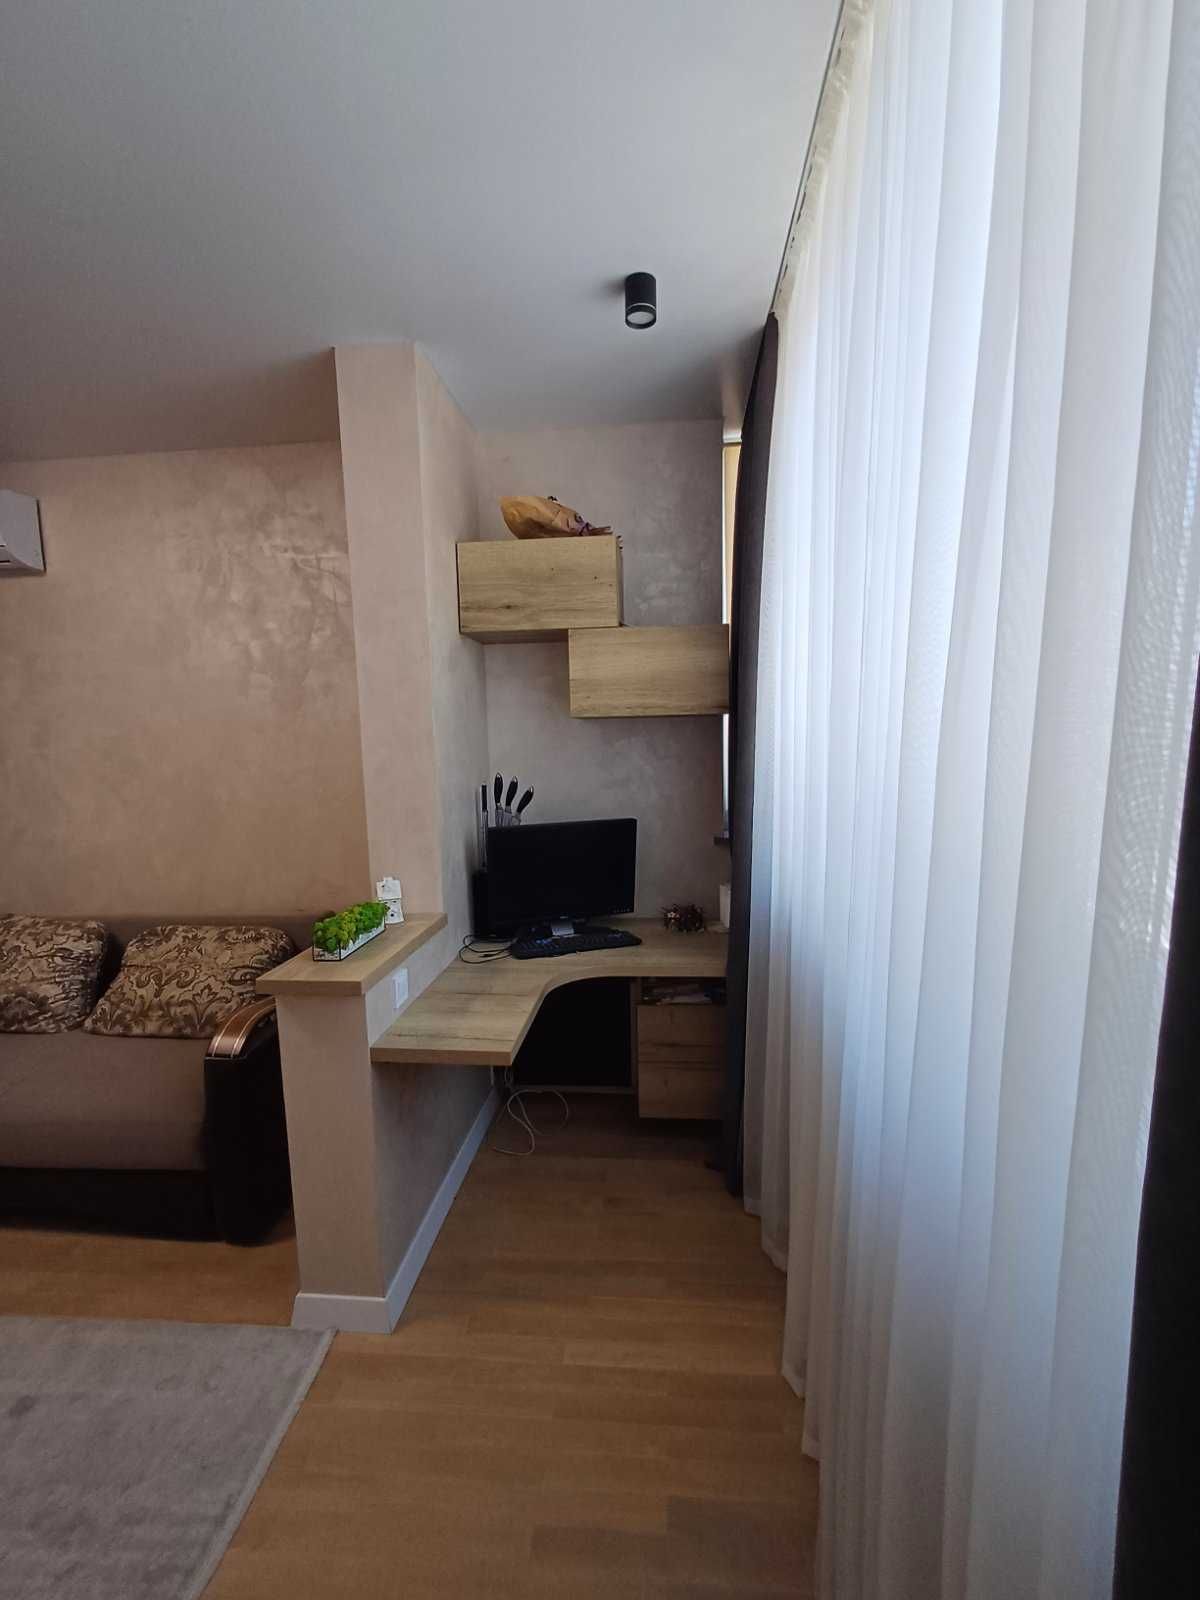 1-комнатная уникальная квартира на Сахарова.